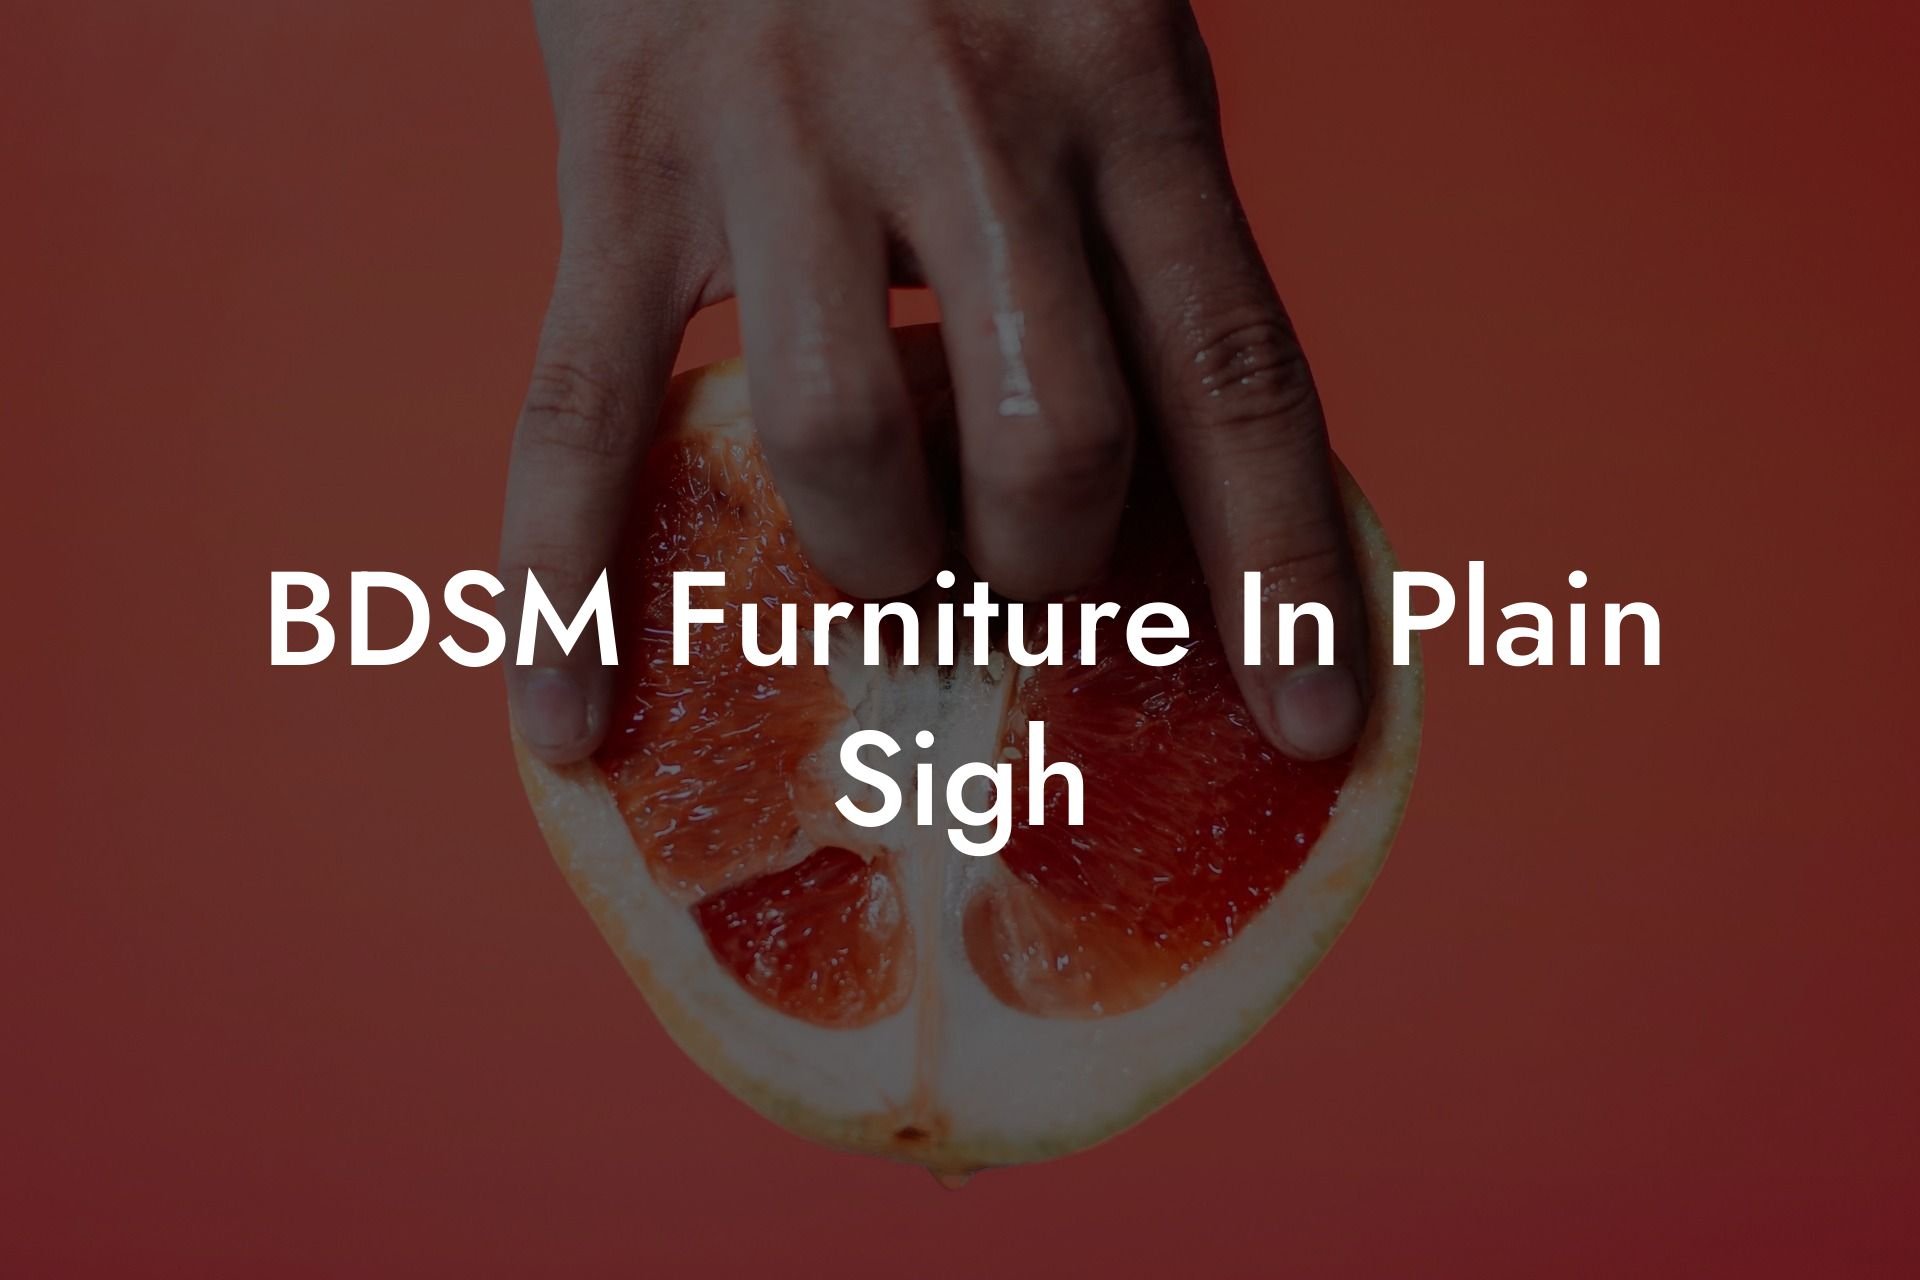 BDSM Furniture In Plain Sigh